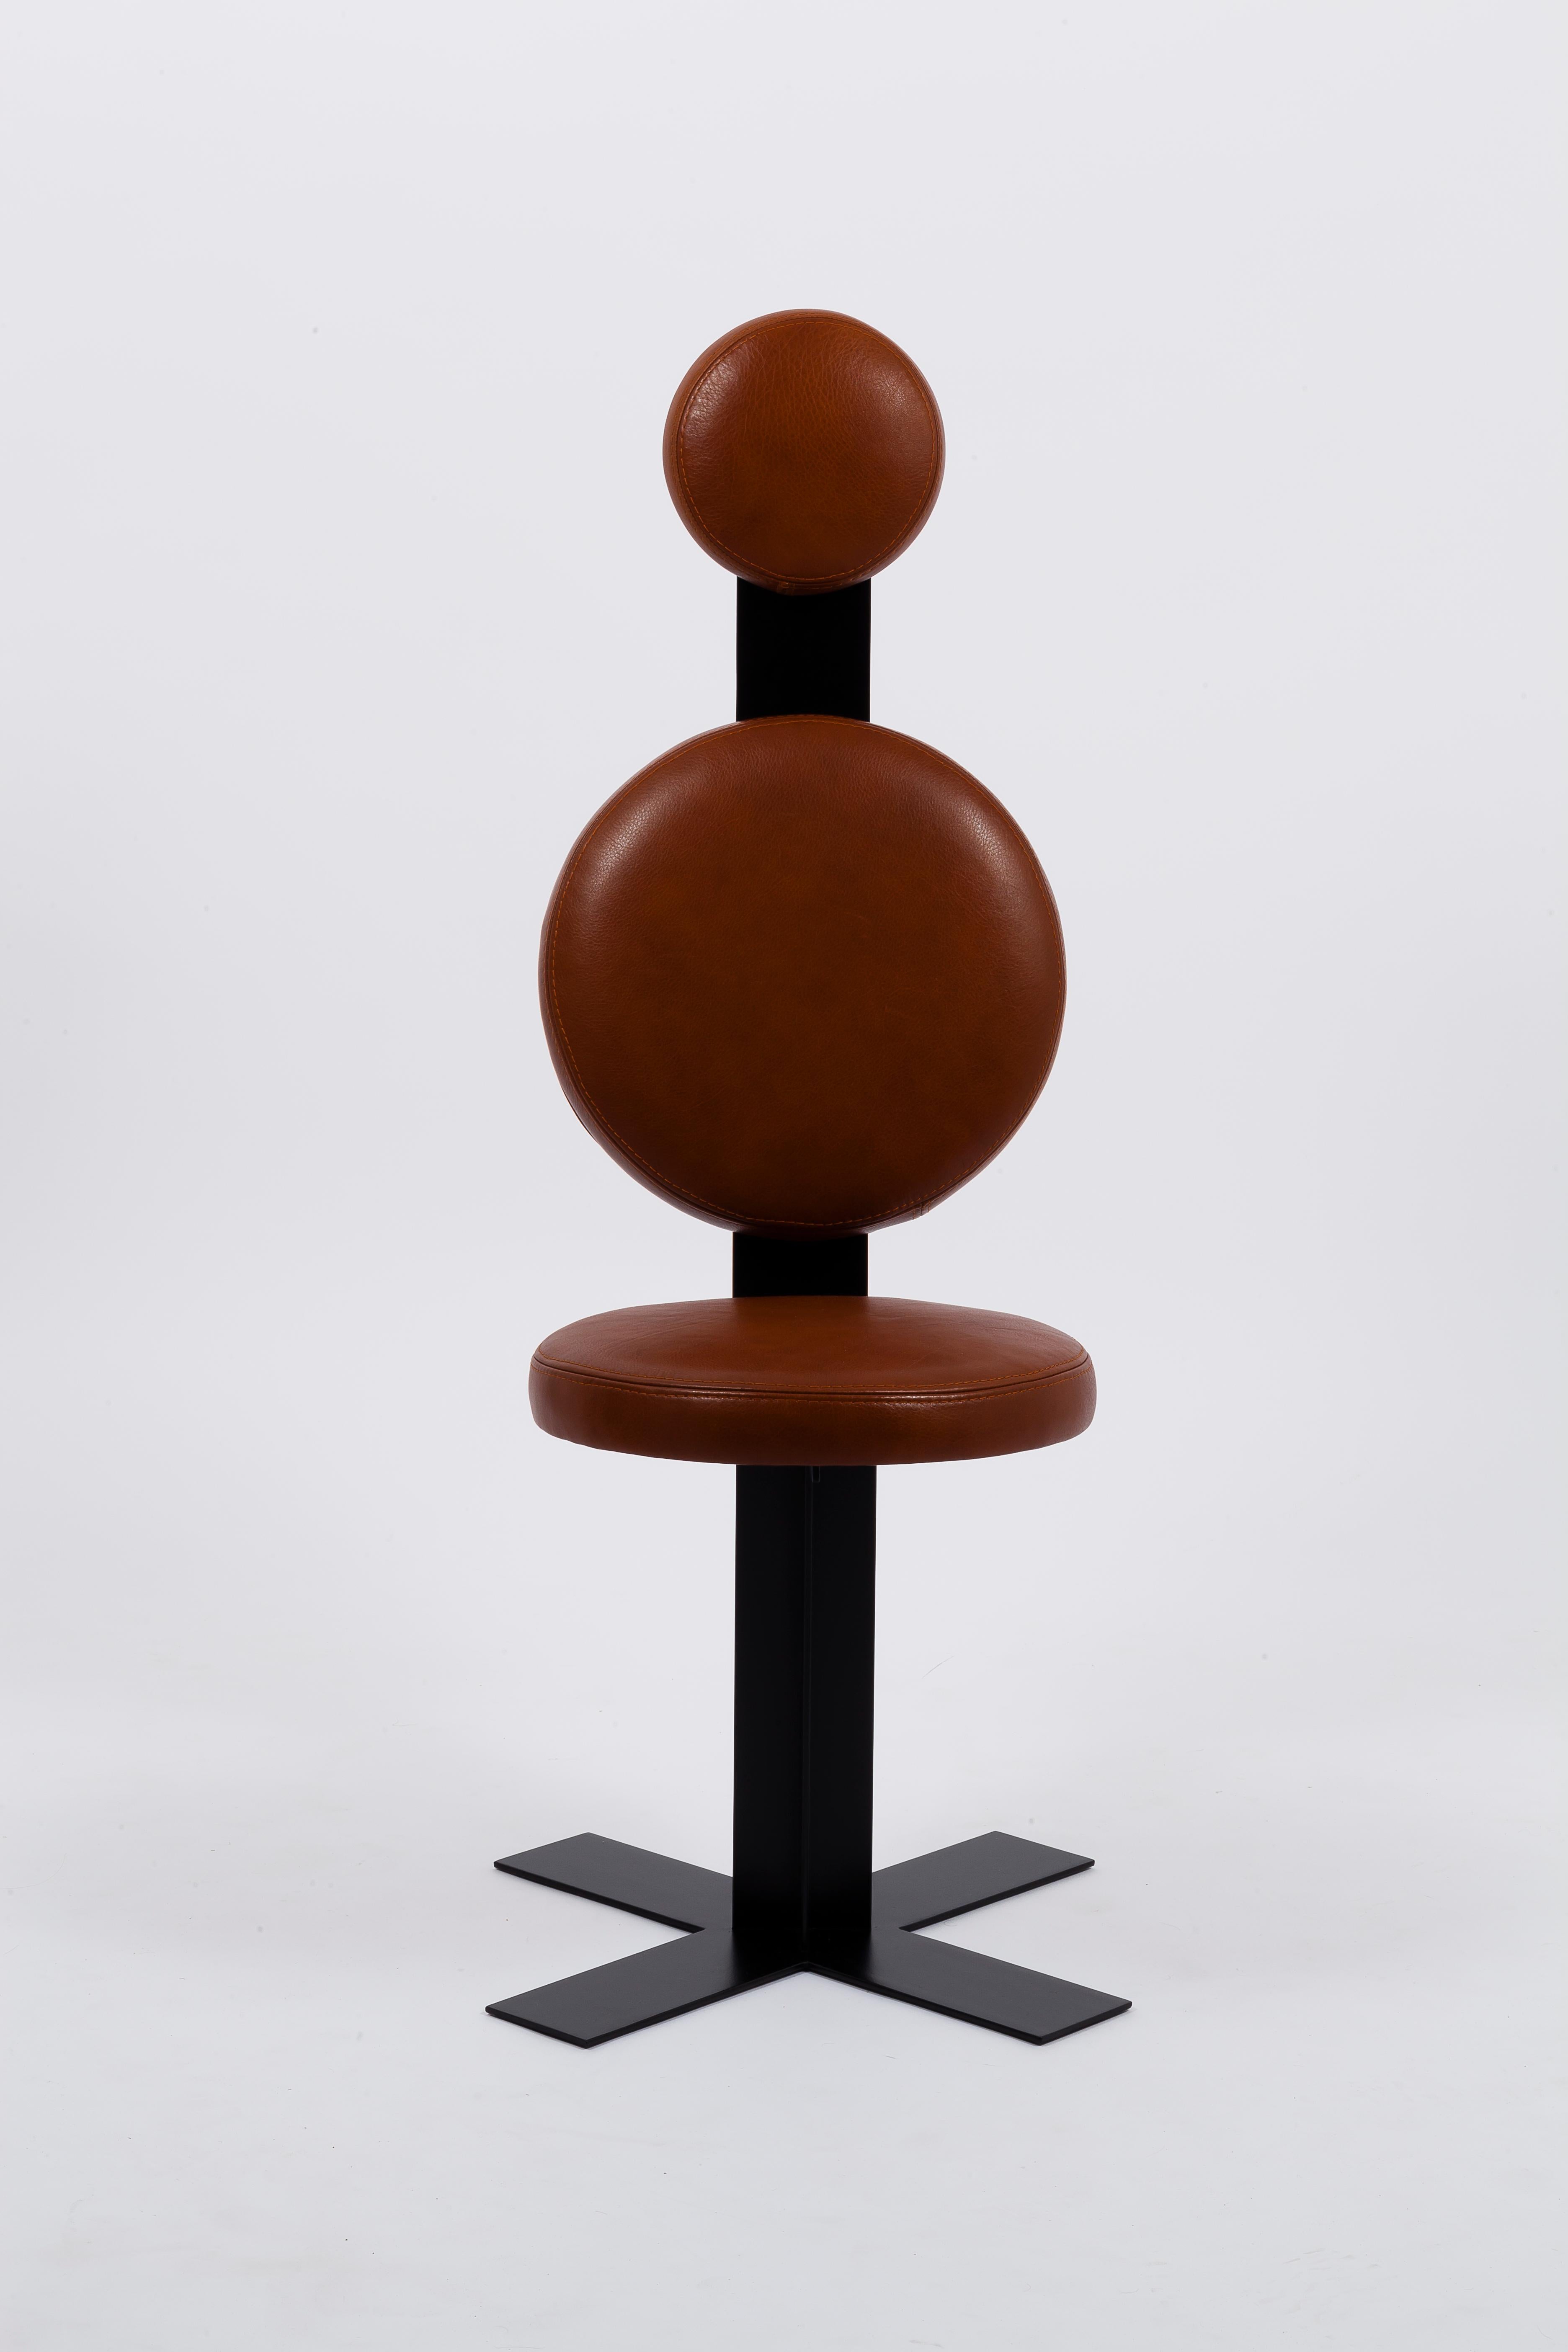 Le design minimal et élégant de la chaise de bureau Mayet lui confère un style unique dans le monde des chaises de bureau encombrantes. Grâce à son design ergonomique, la chaise de bureau Mayet offre un soutien dorsal ferme et confortable, sans pour